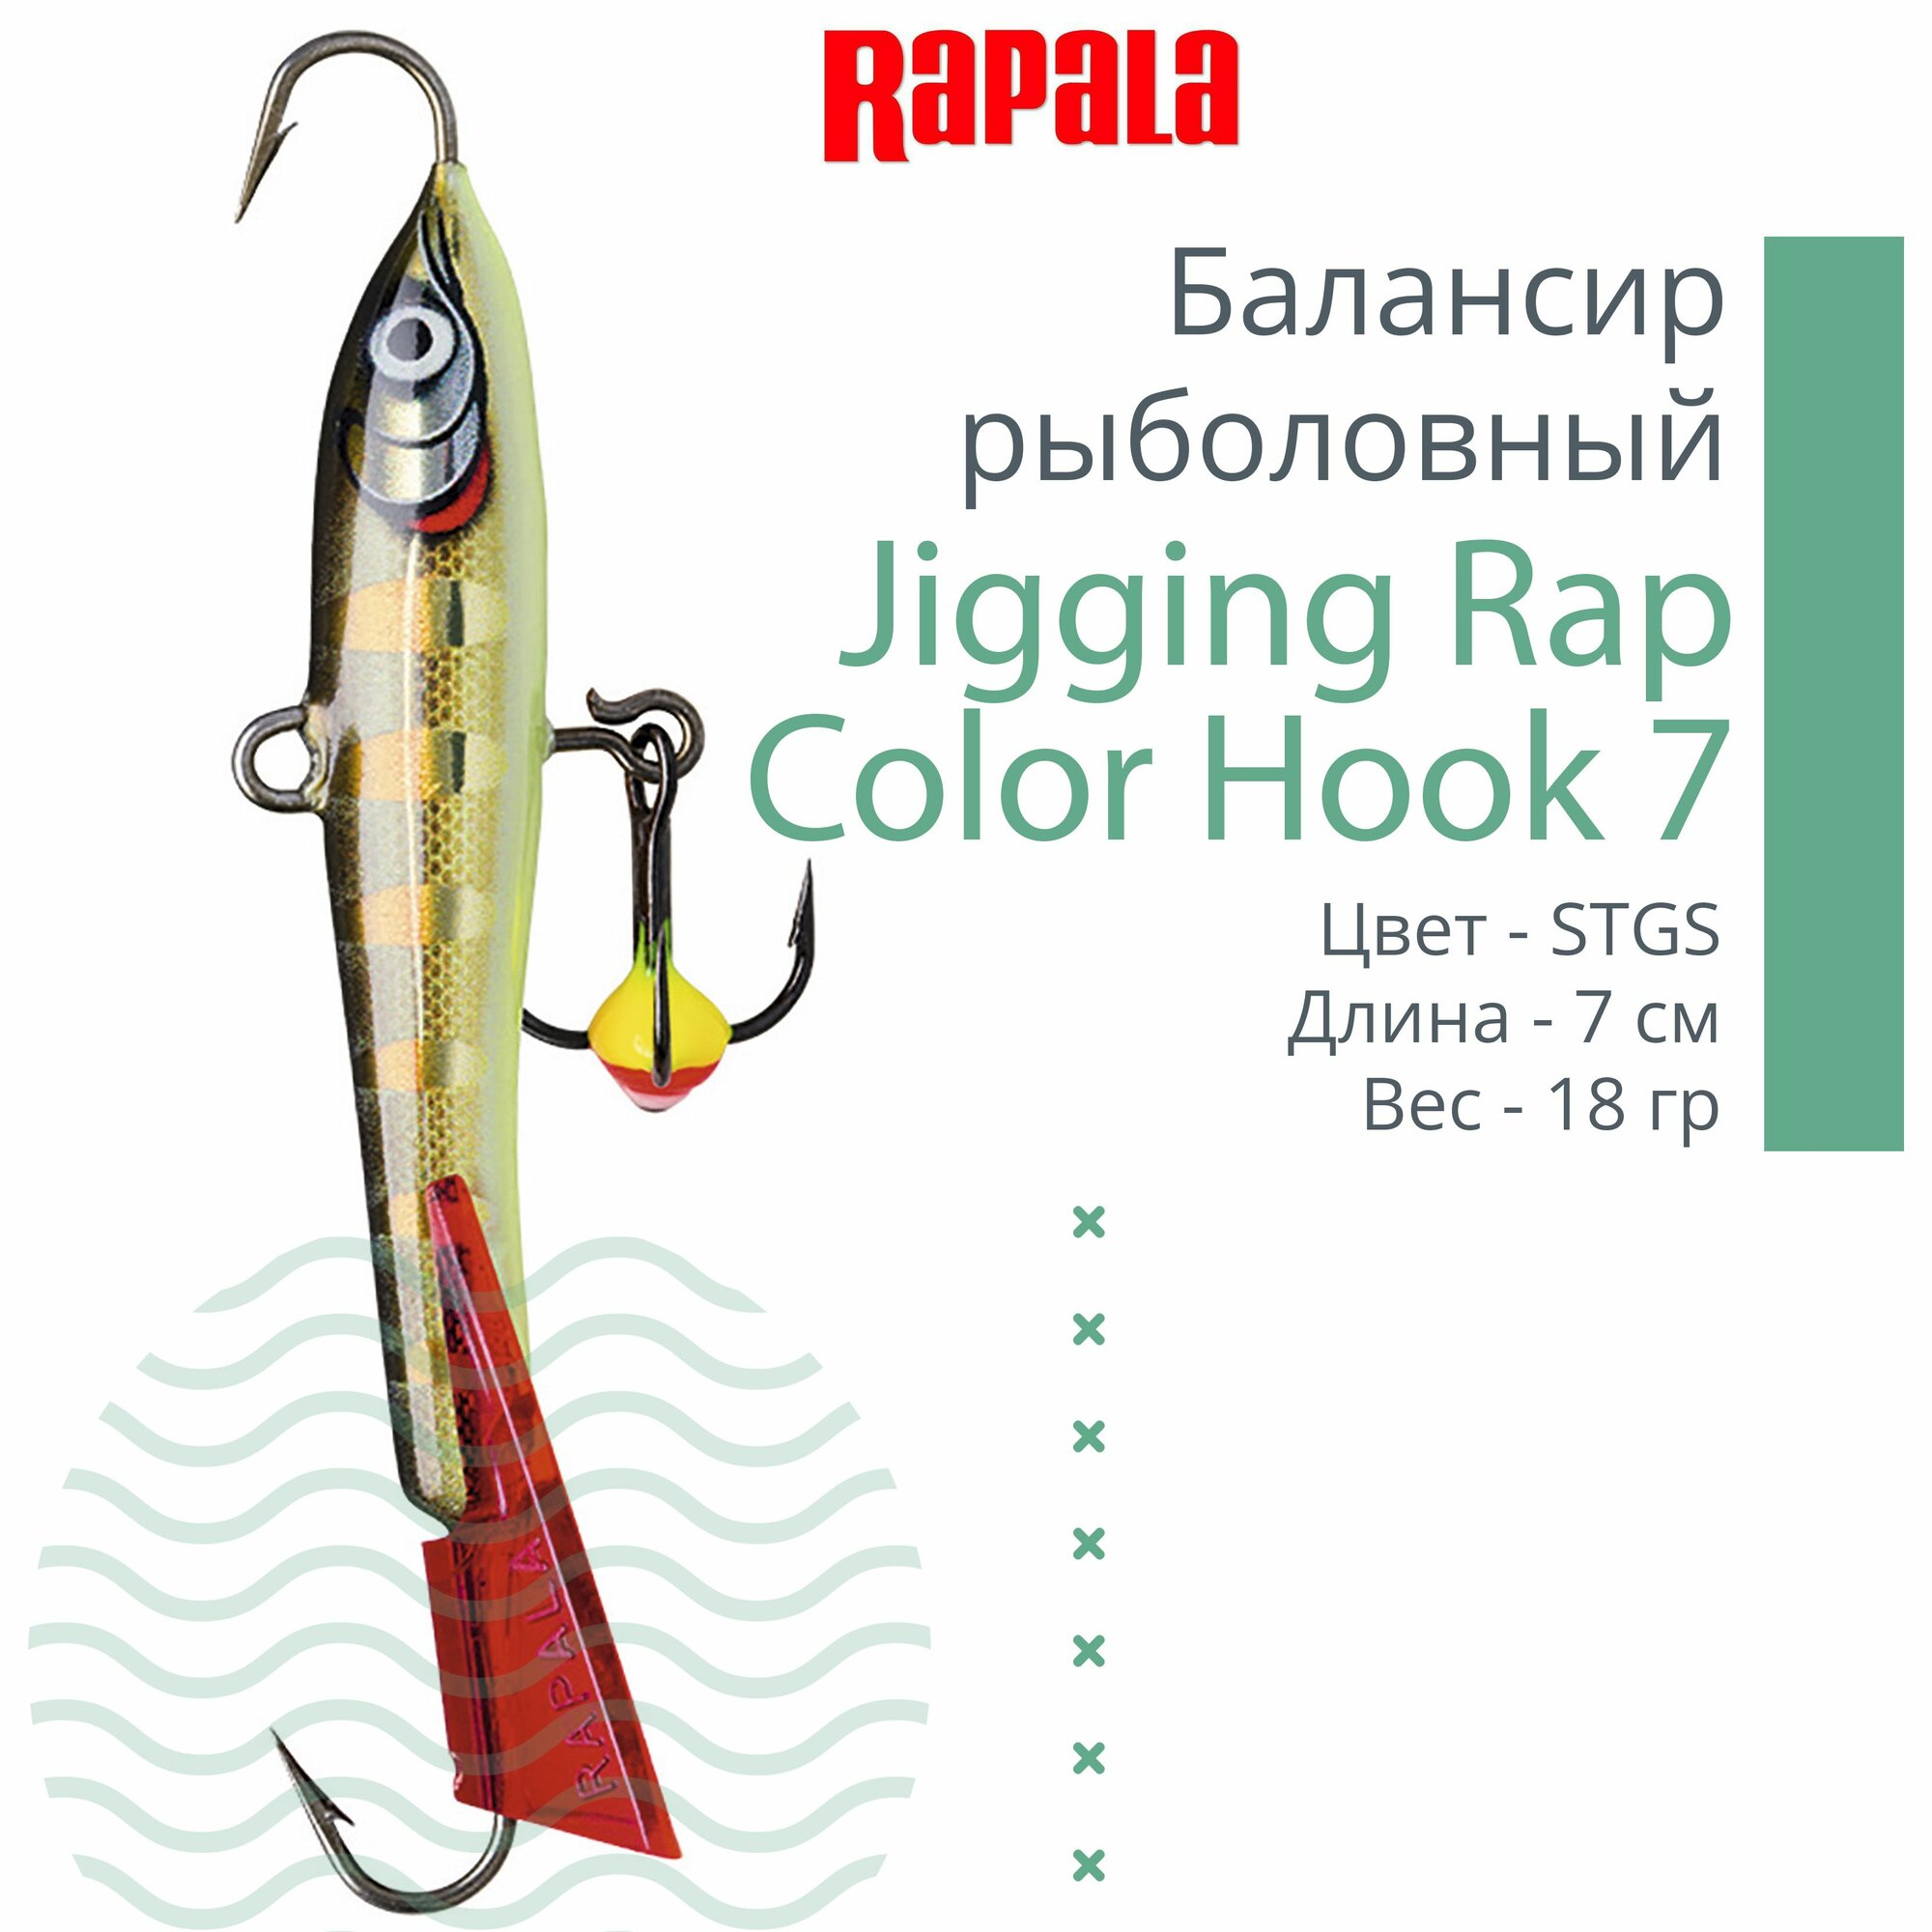 Балансир для зимней рыбалки Rapala Jigging Rap Color Hook 7 /STGS